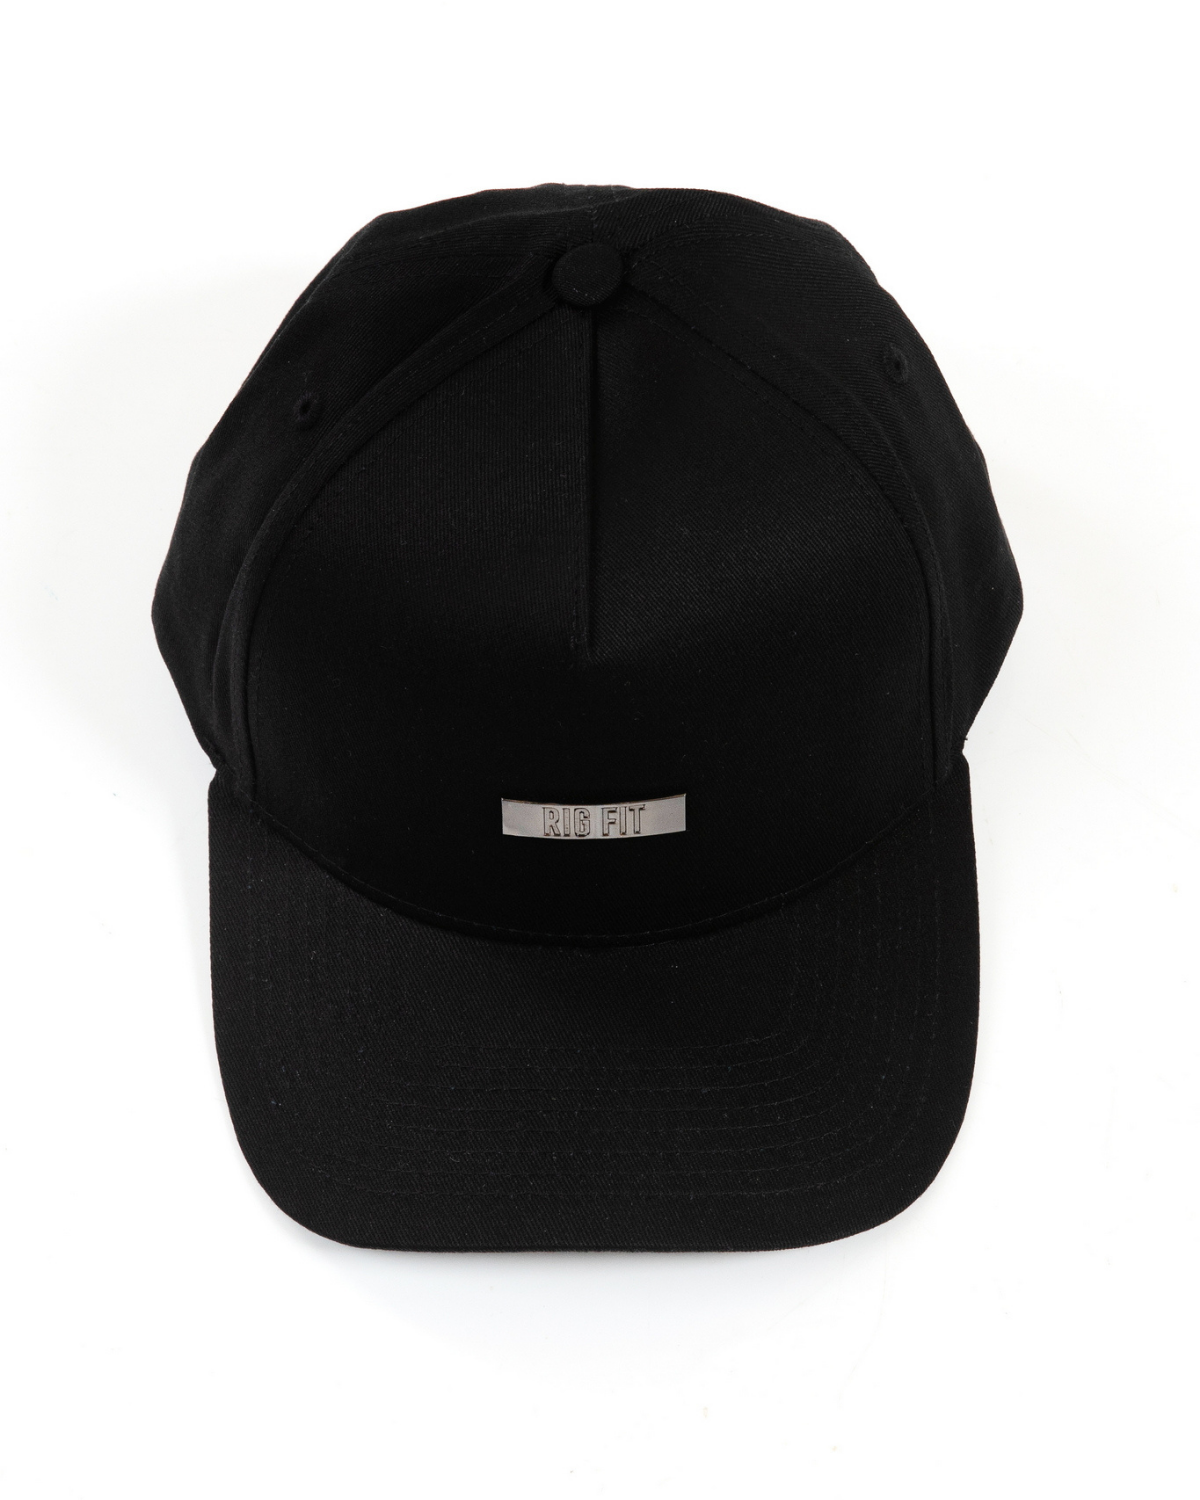 Badged A-Frame Snapback Hat